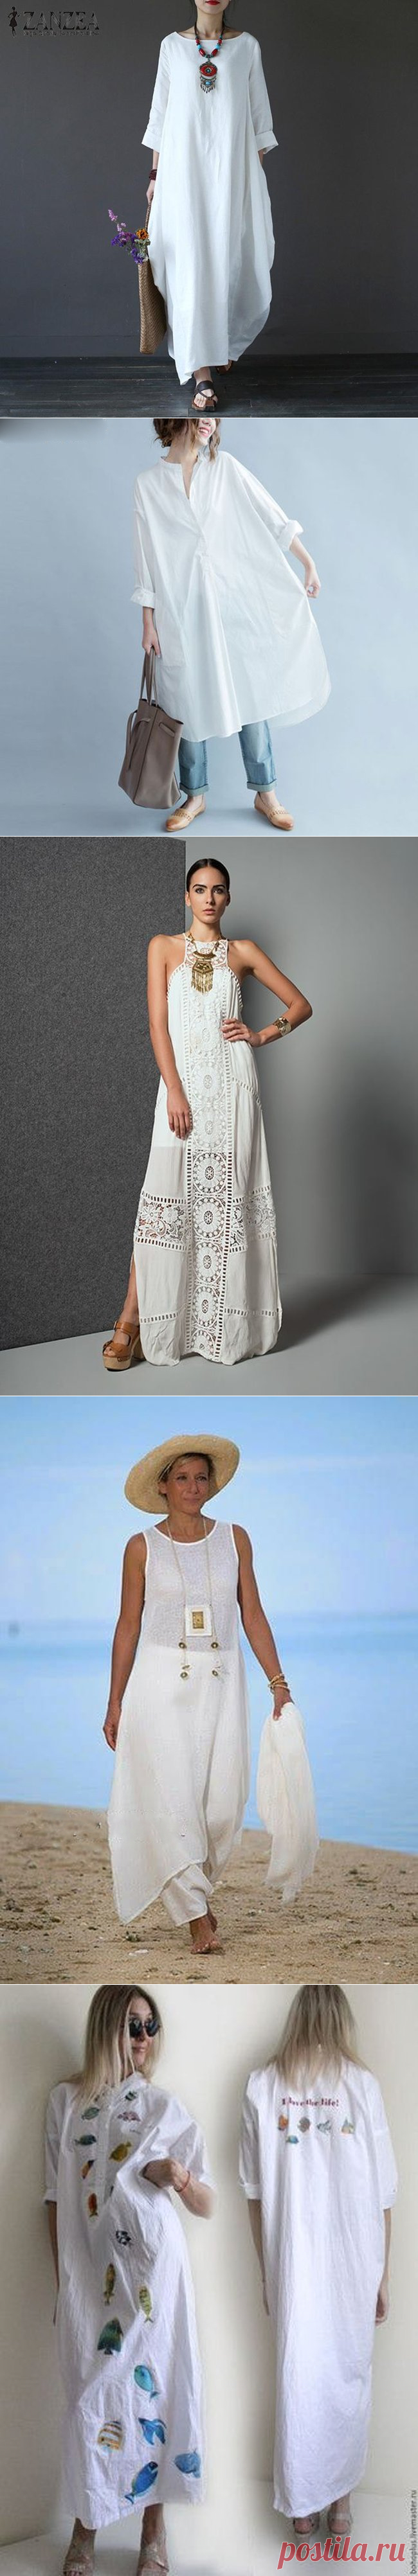 Белая одежда в стиле Бохо — Идеальный вариант для жаркого лета - Feelfeed